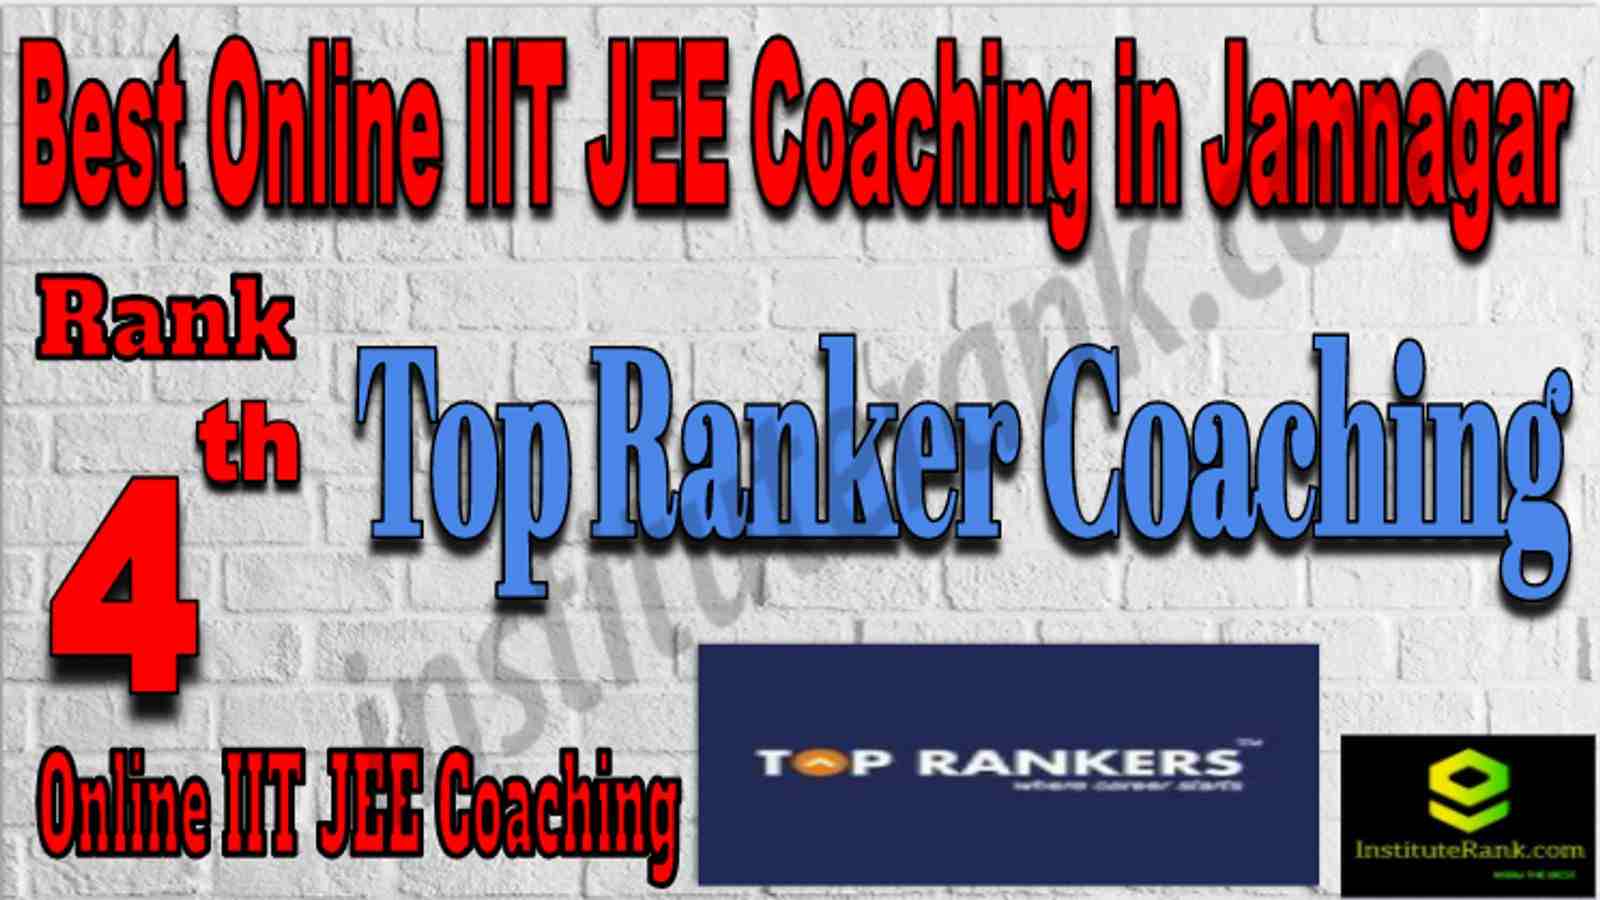 Rank 4 Best Online IIT JEE Coaching in Jamnagar